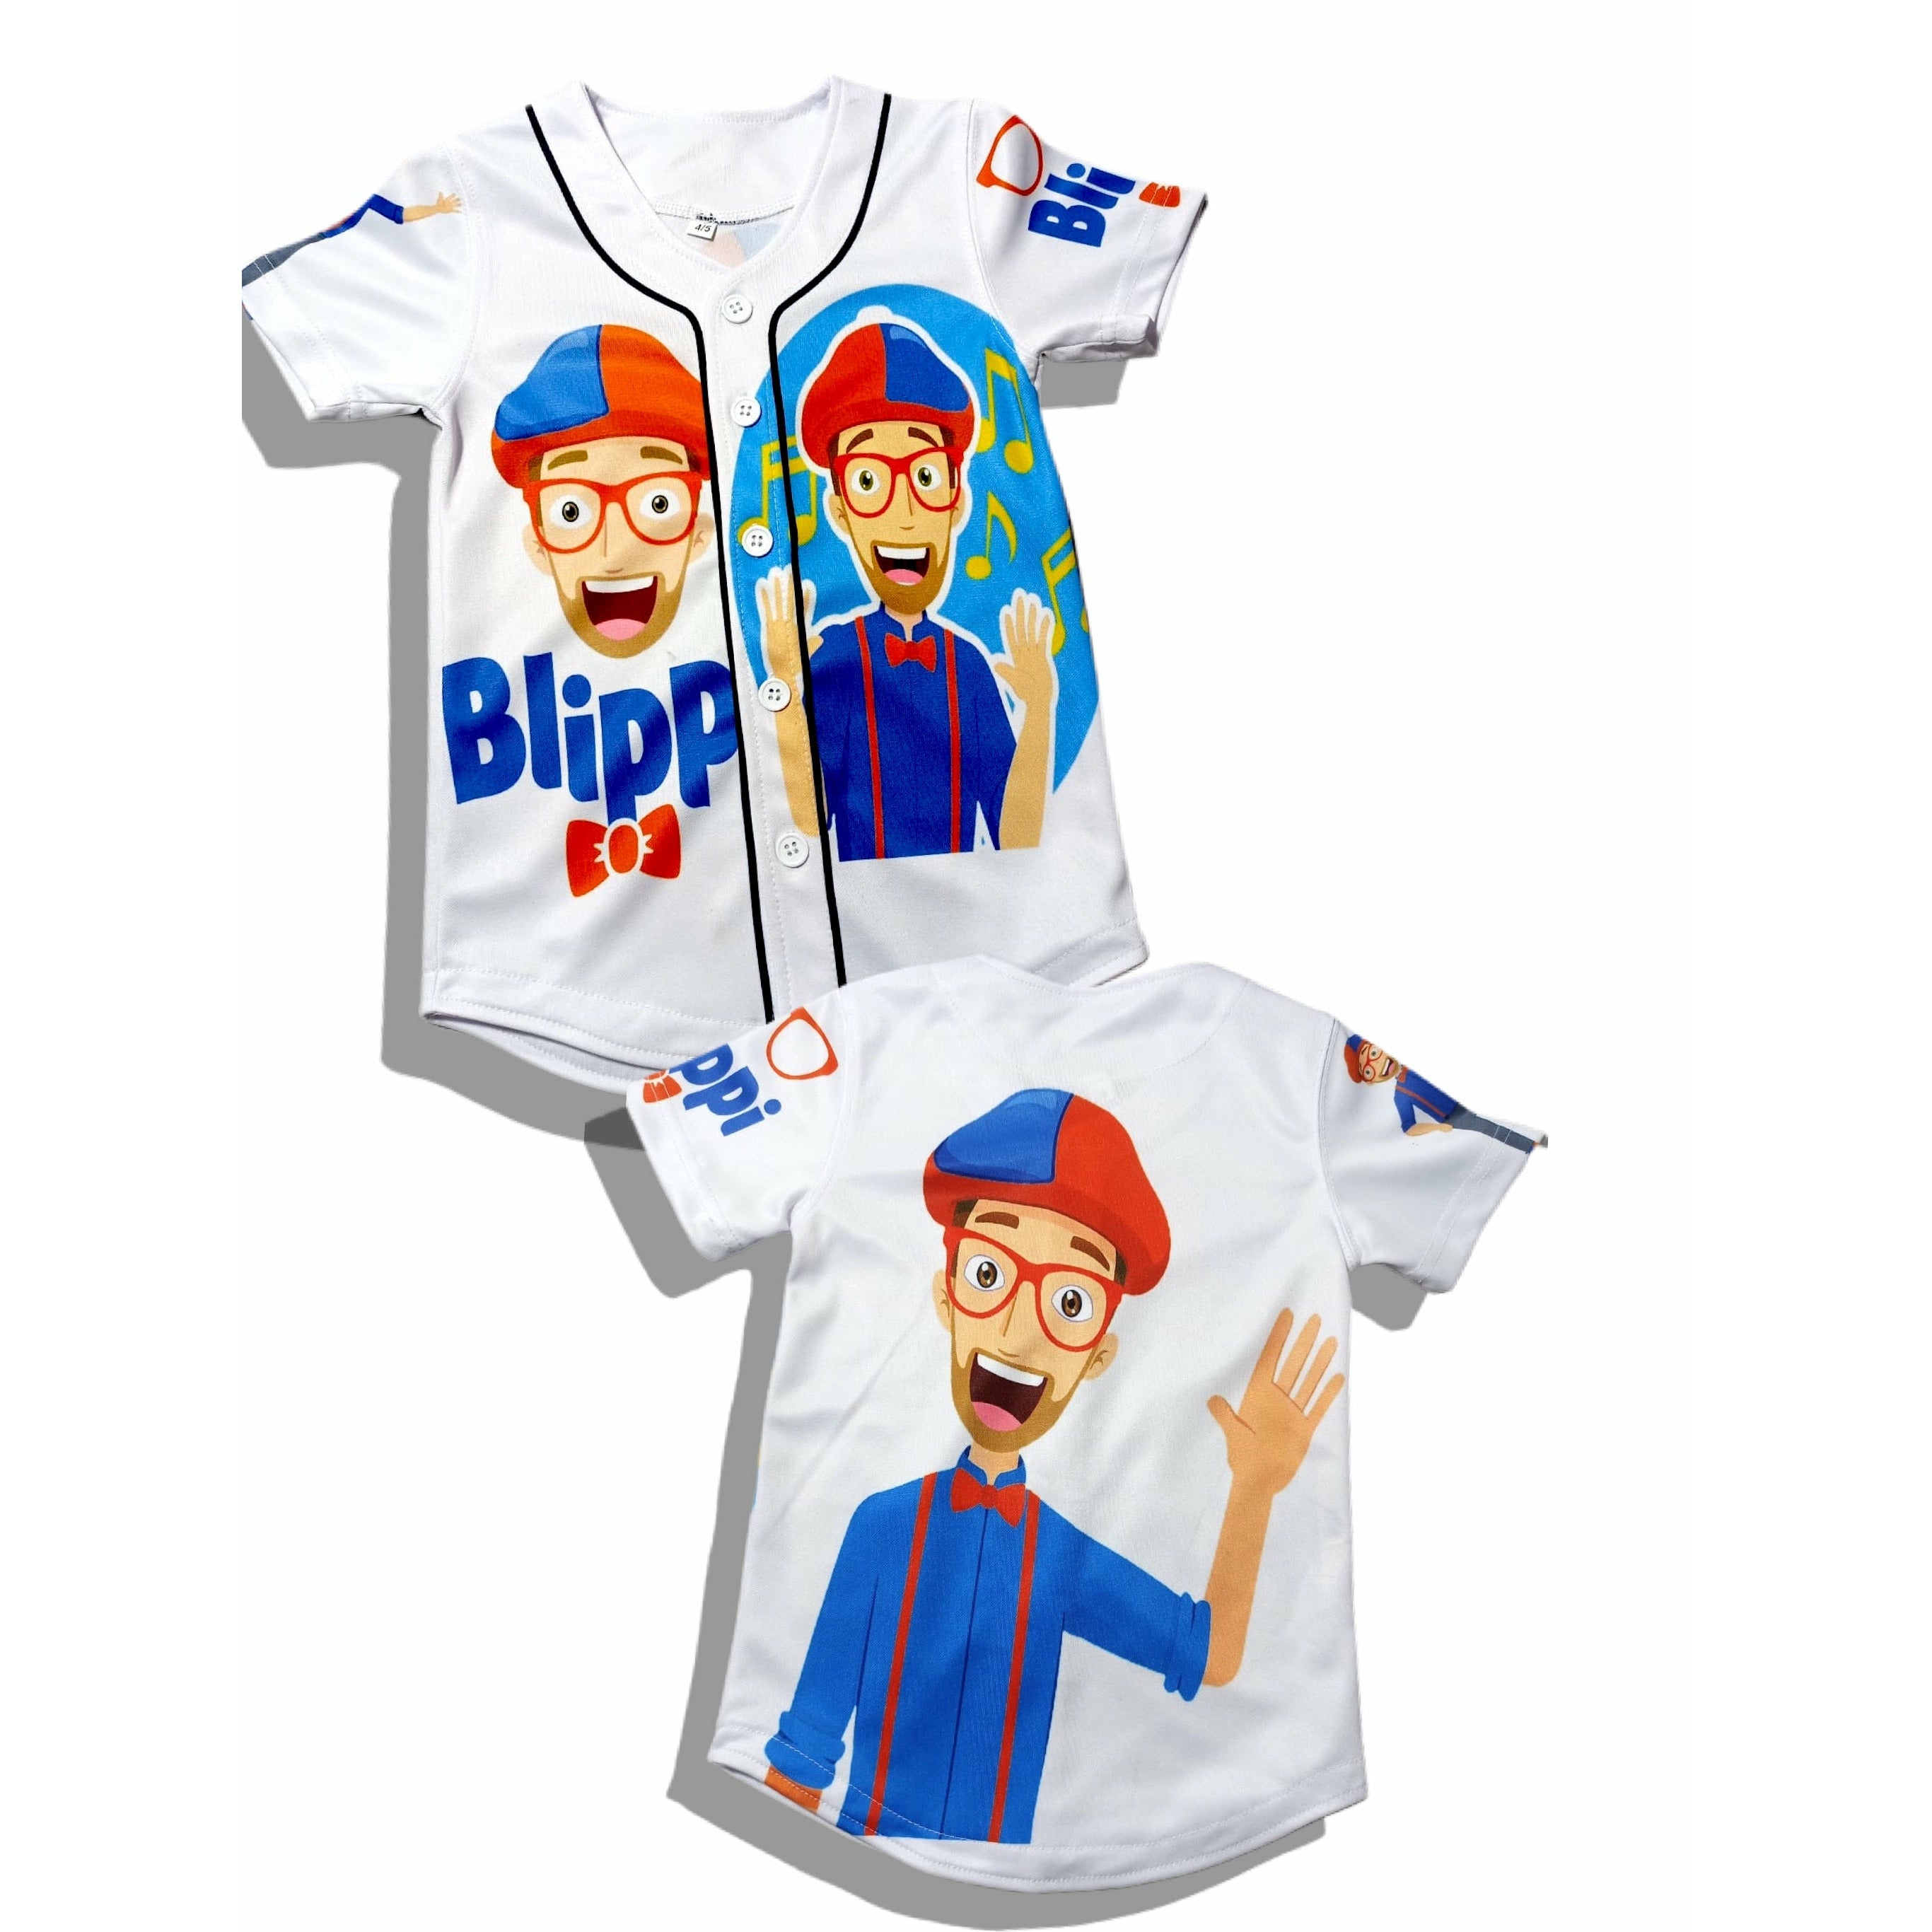 Kids Blippi Baseball Jersey